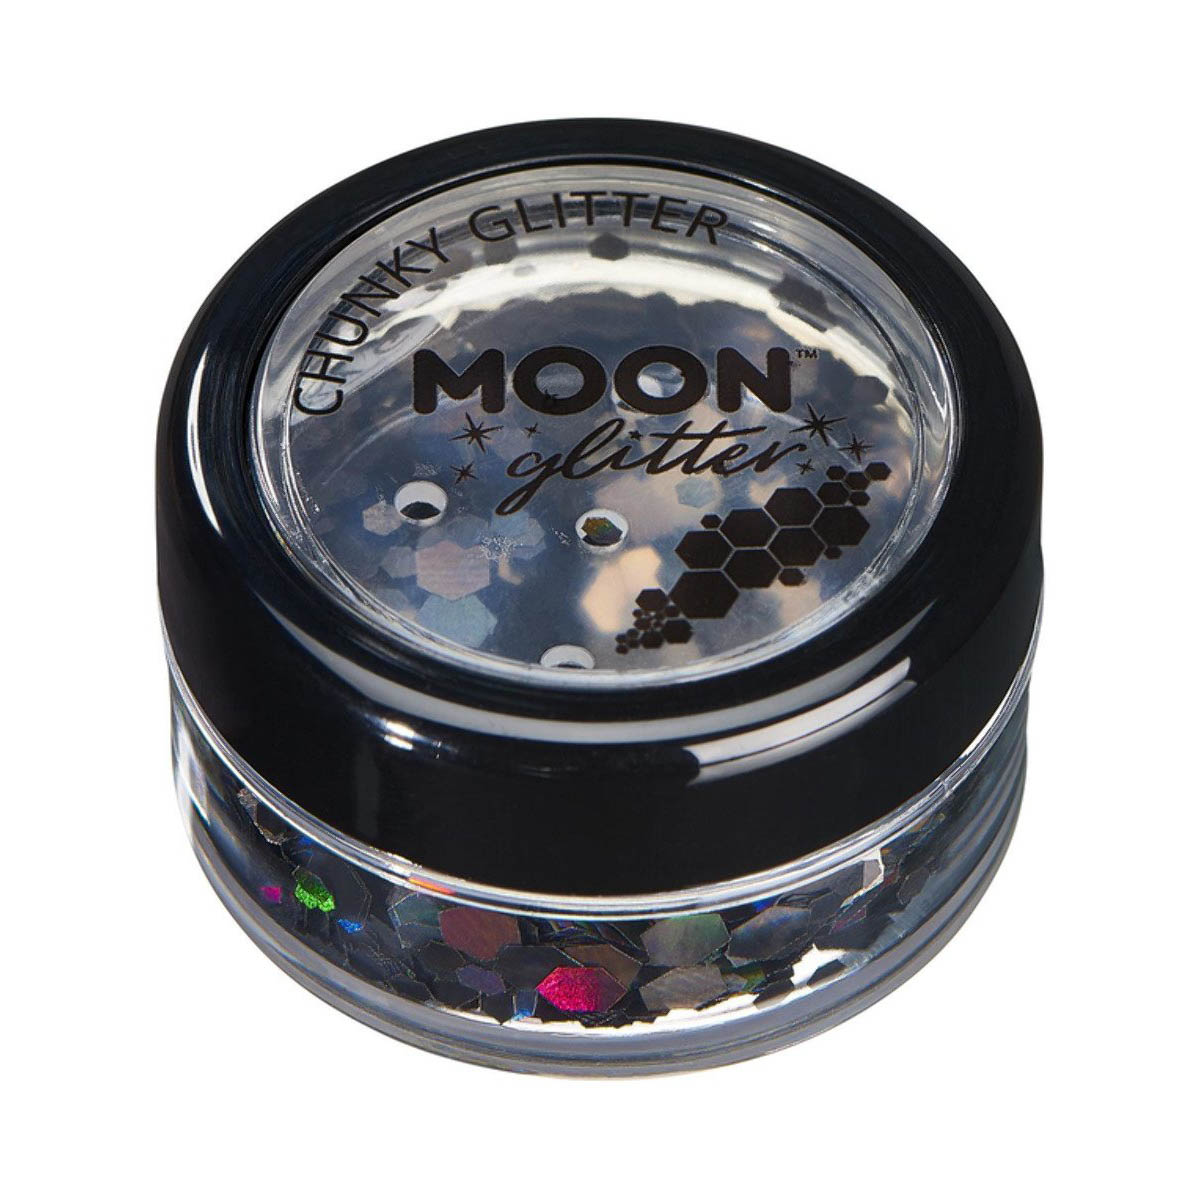 Läs mer om Moon glitter i burk, chunky holografisk 3g Svart